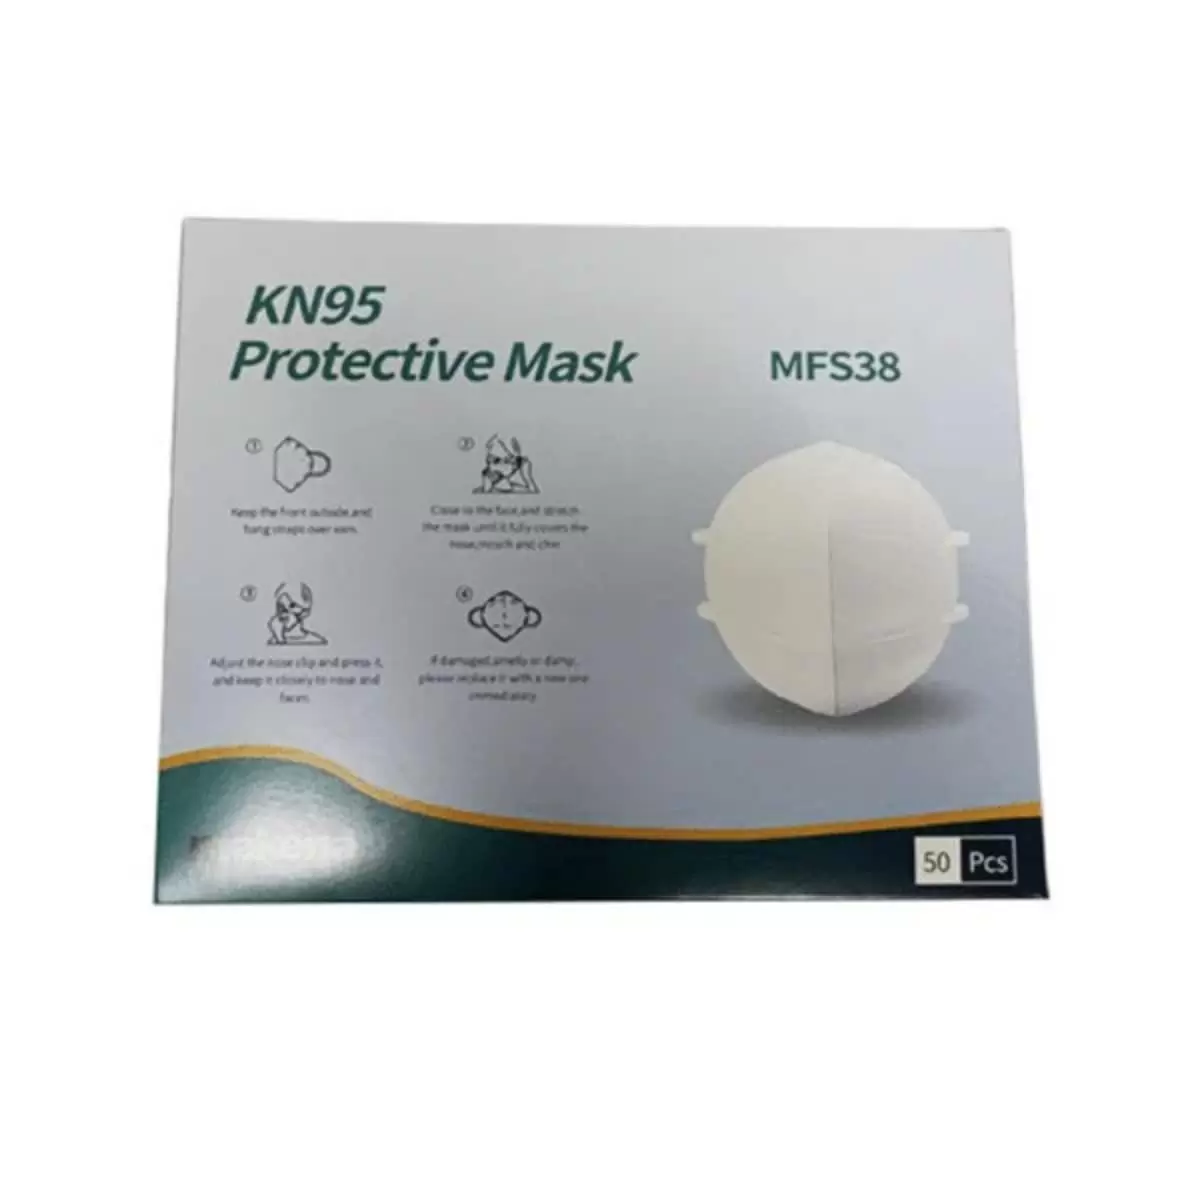 Makena KN95 Protective Mask - MFS38, 10 PK